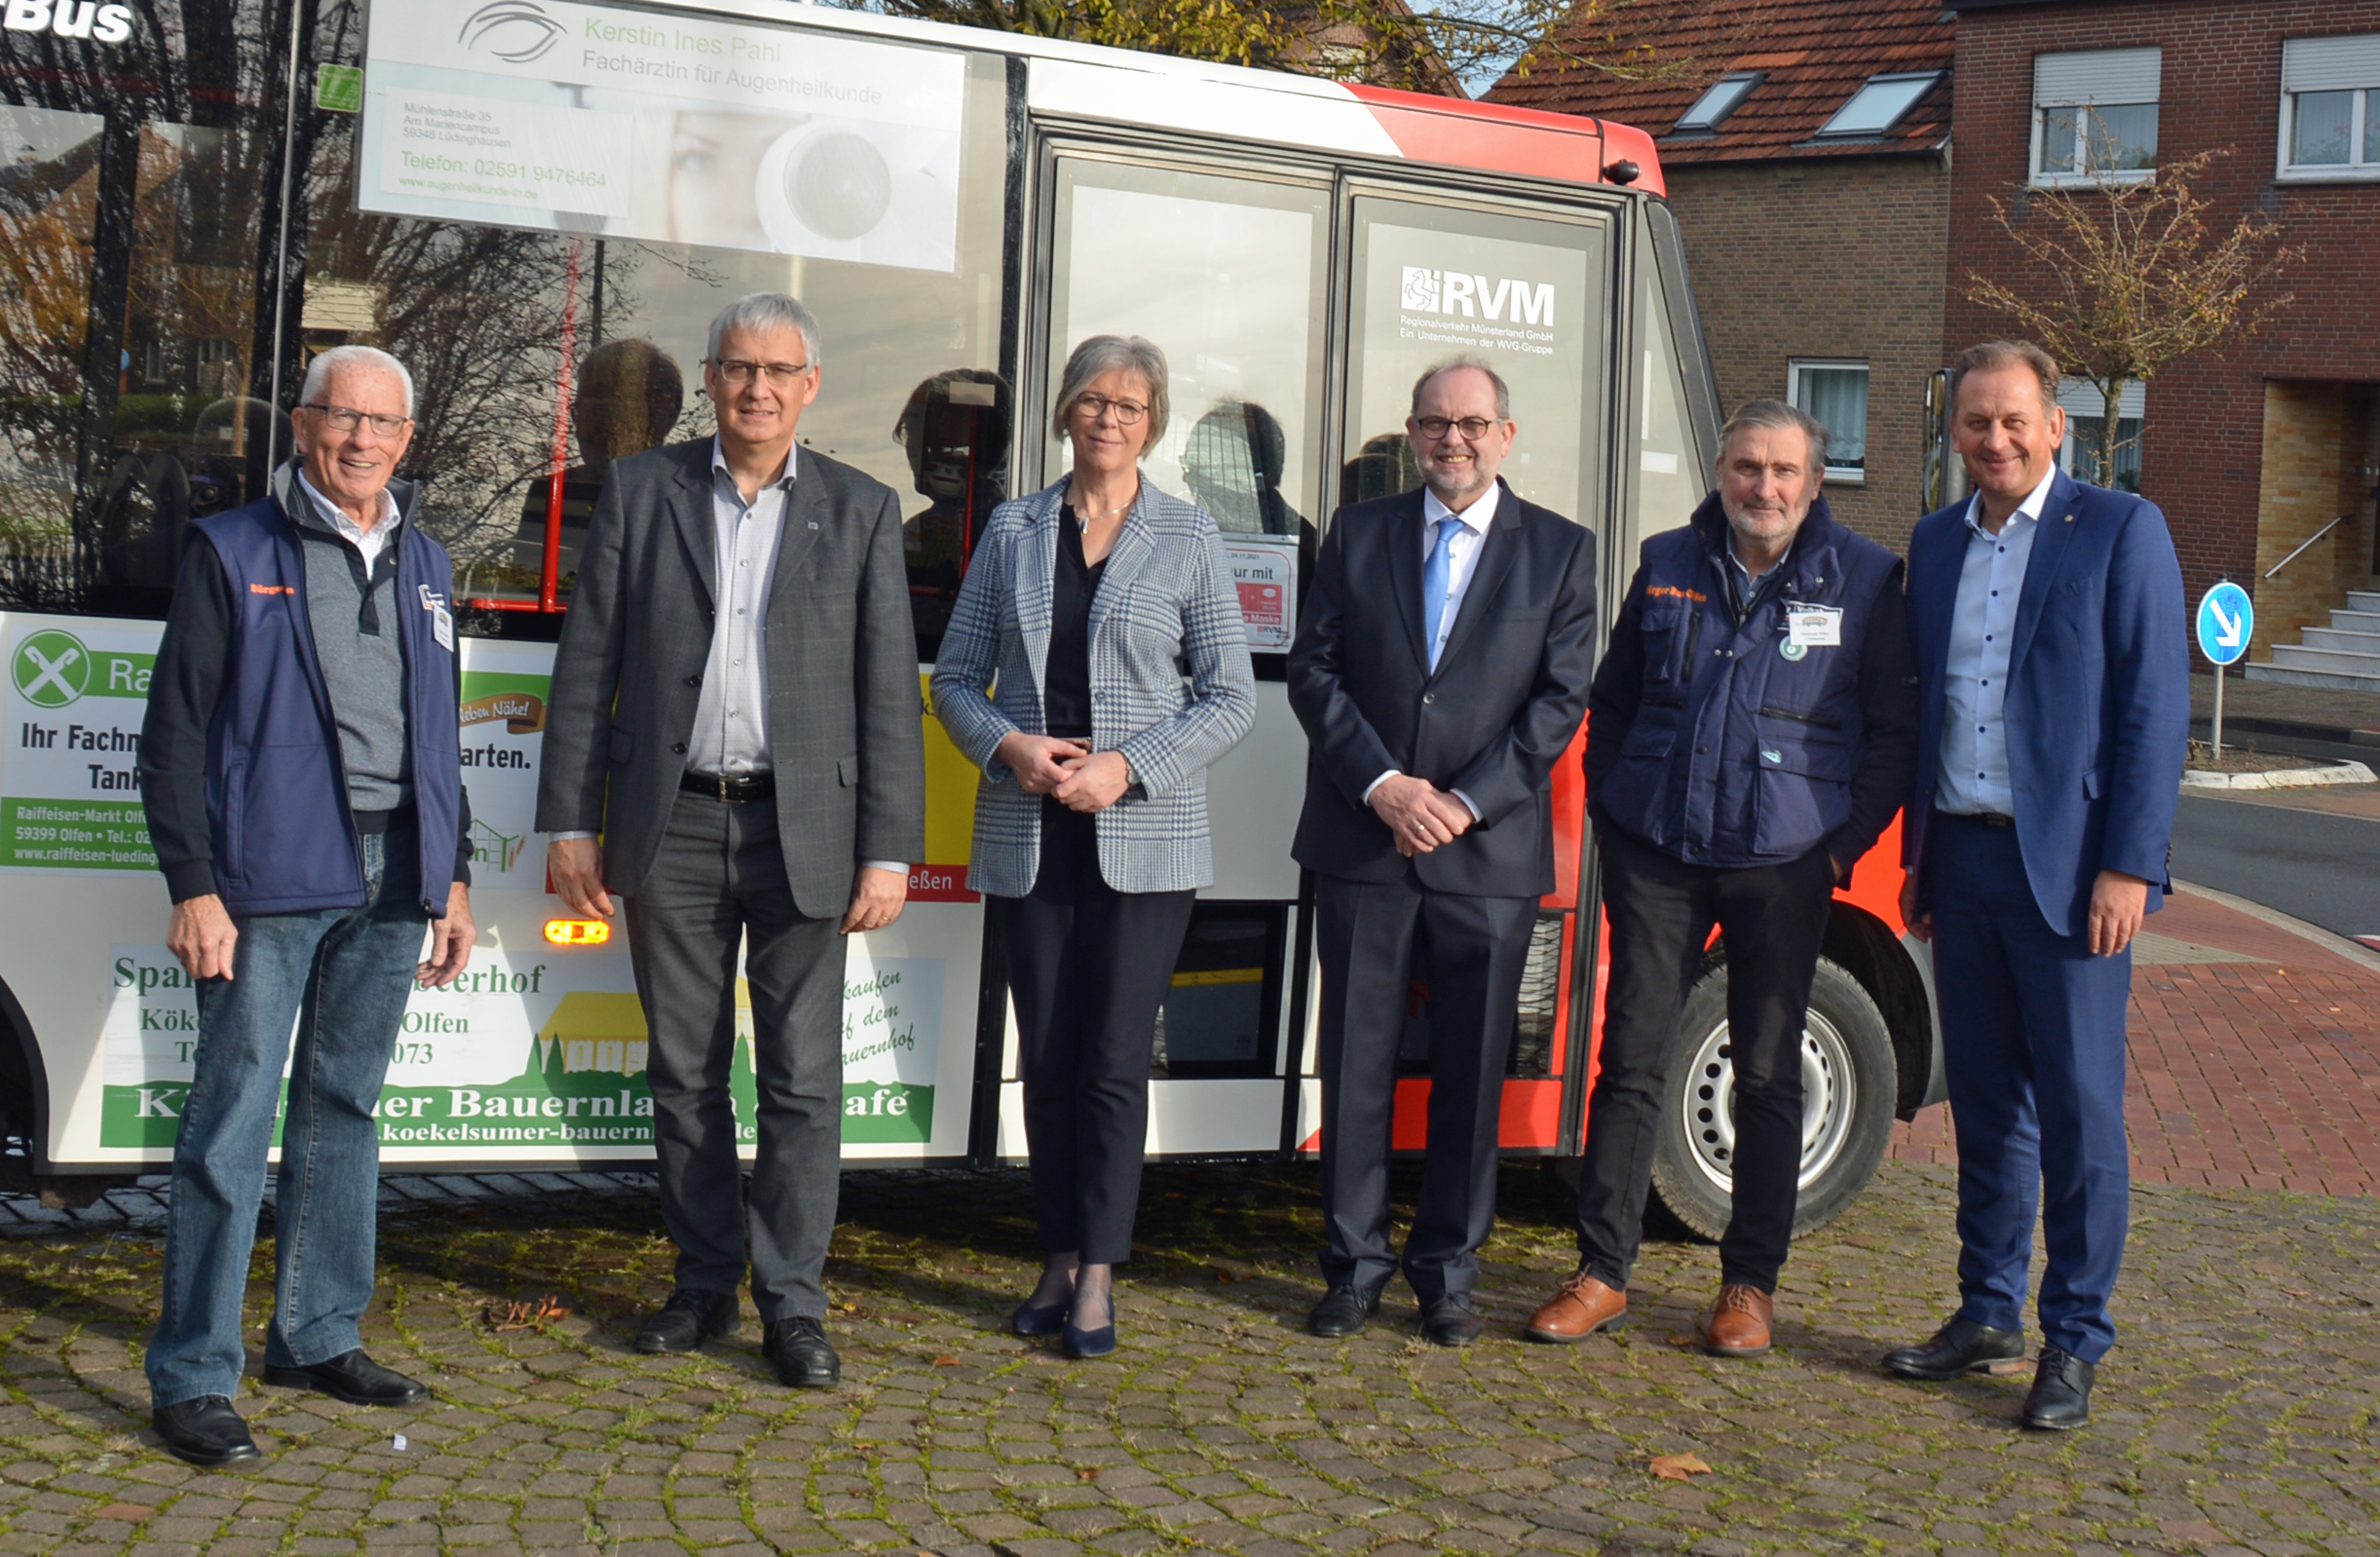 25 Jahre Olfen in | Olfen Bürgerbus-Verein Bürgerbus